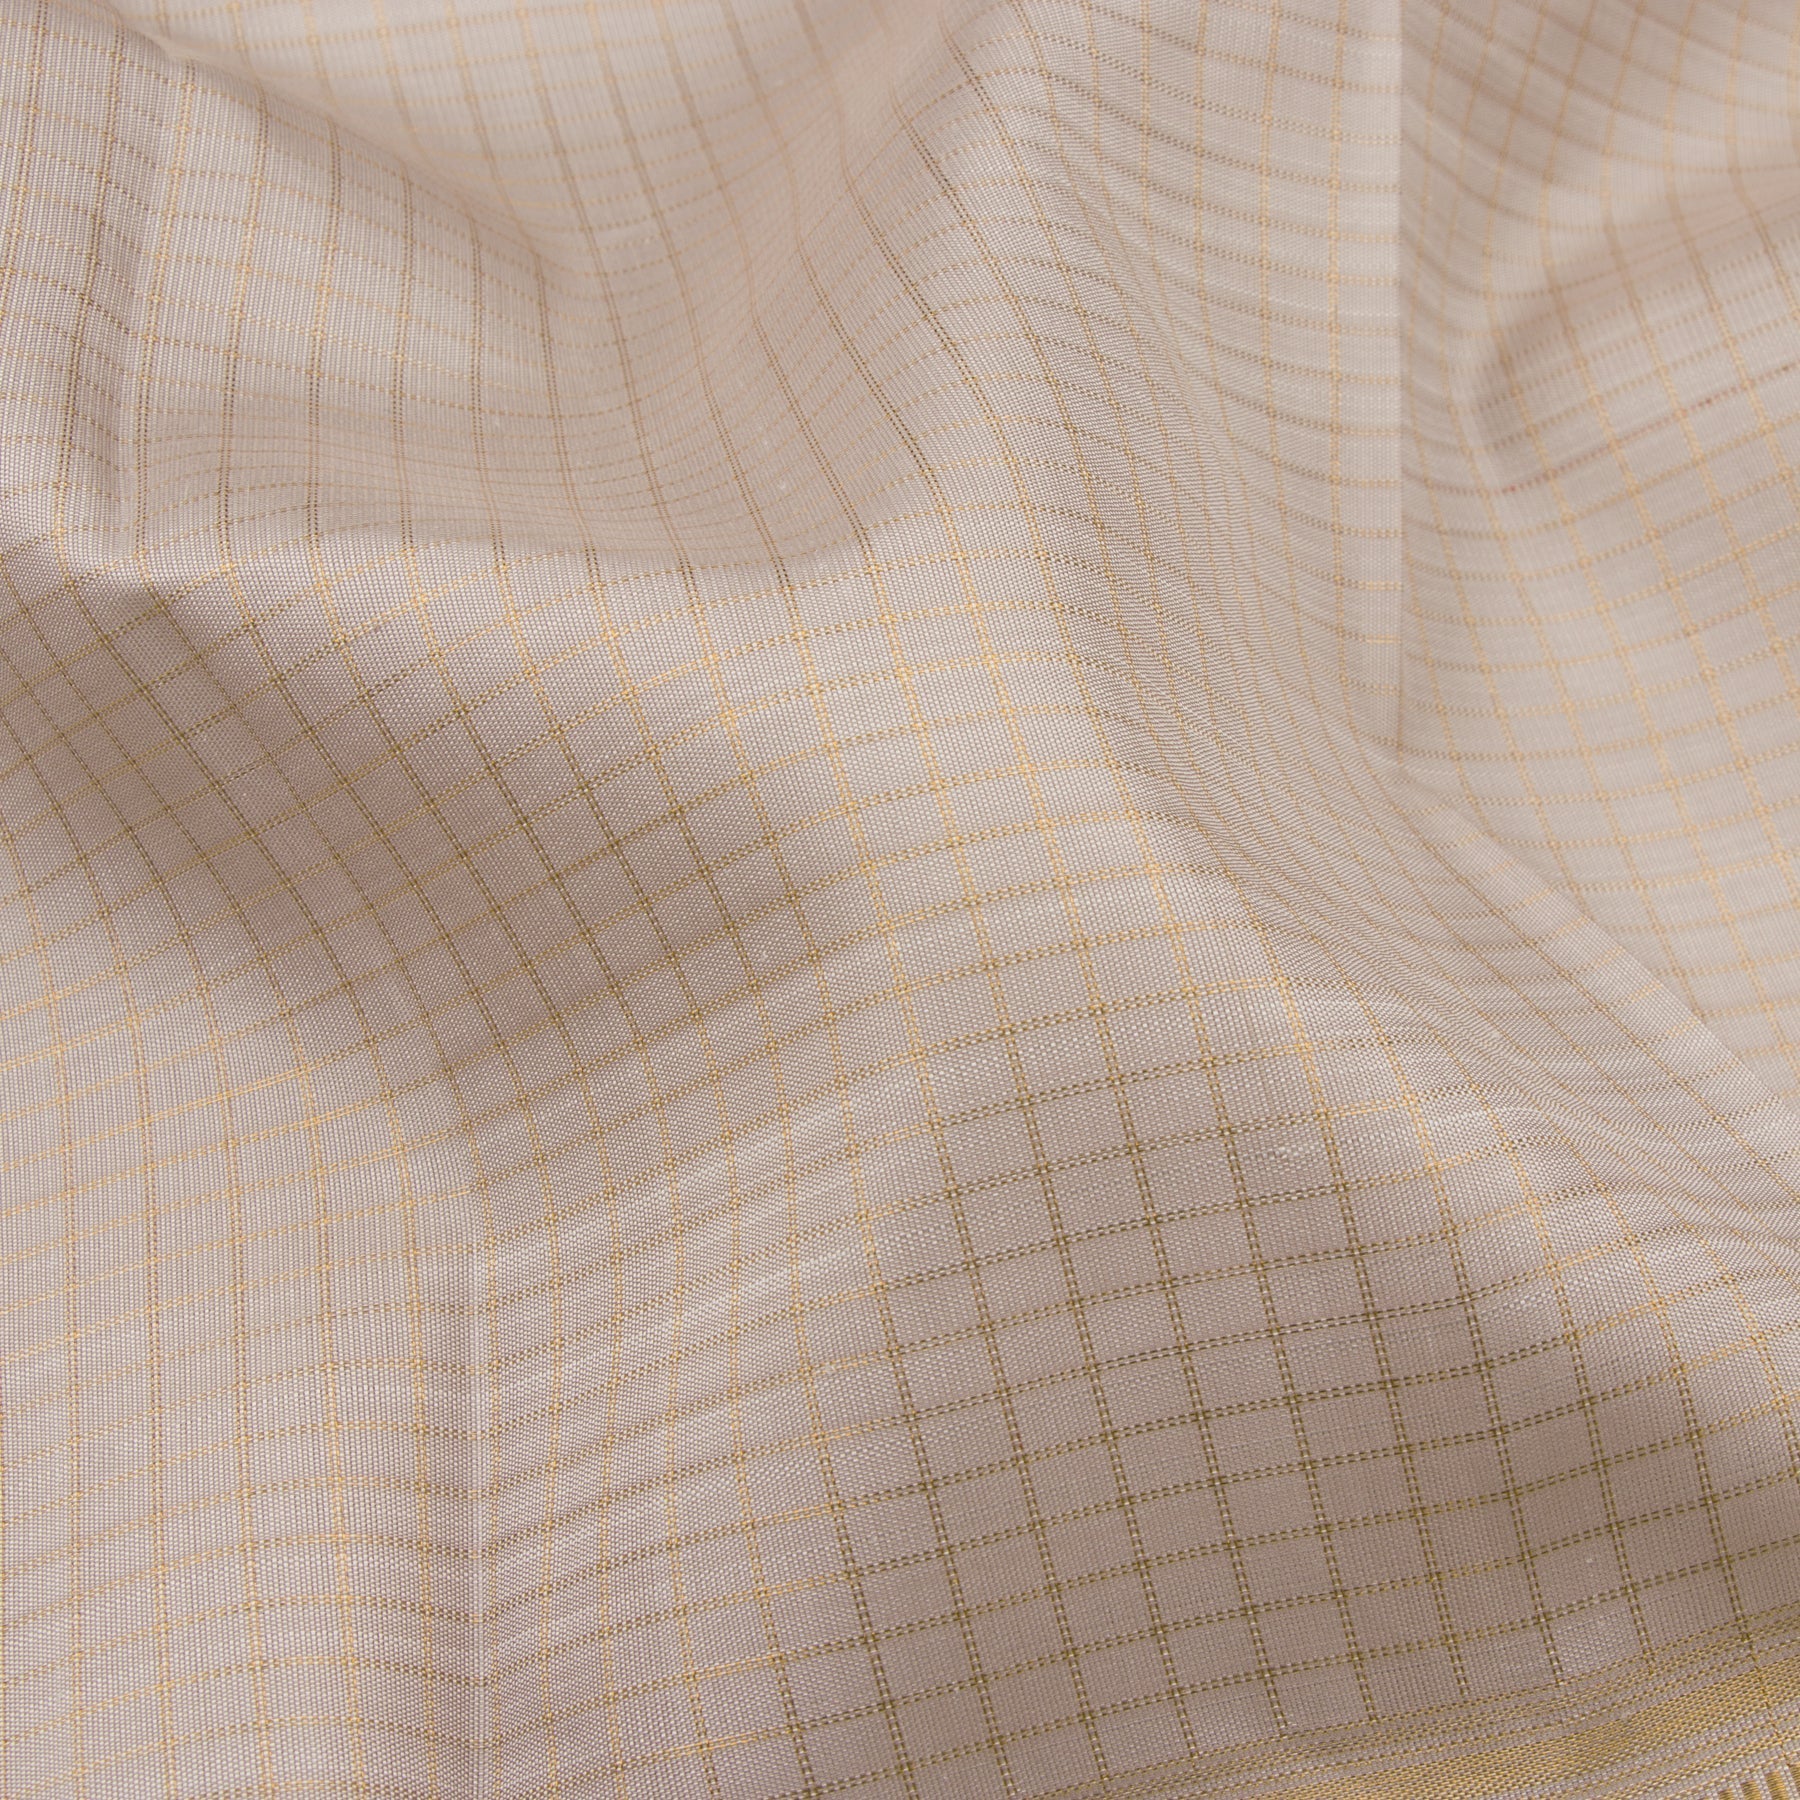 Kanakavalli Kanjivaram Silk Sari 23-611-HS001-00015 - Fabric View